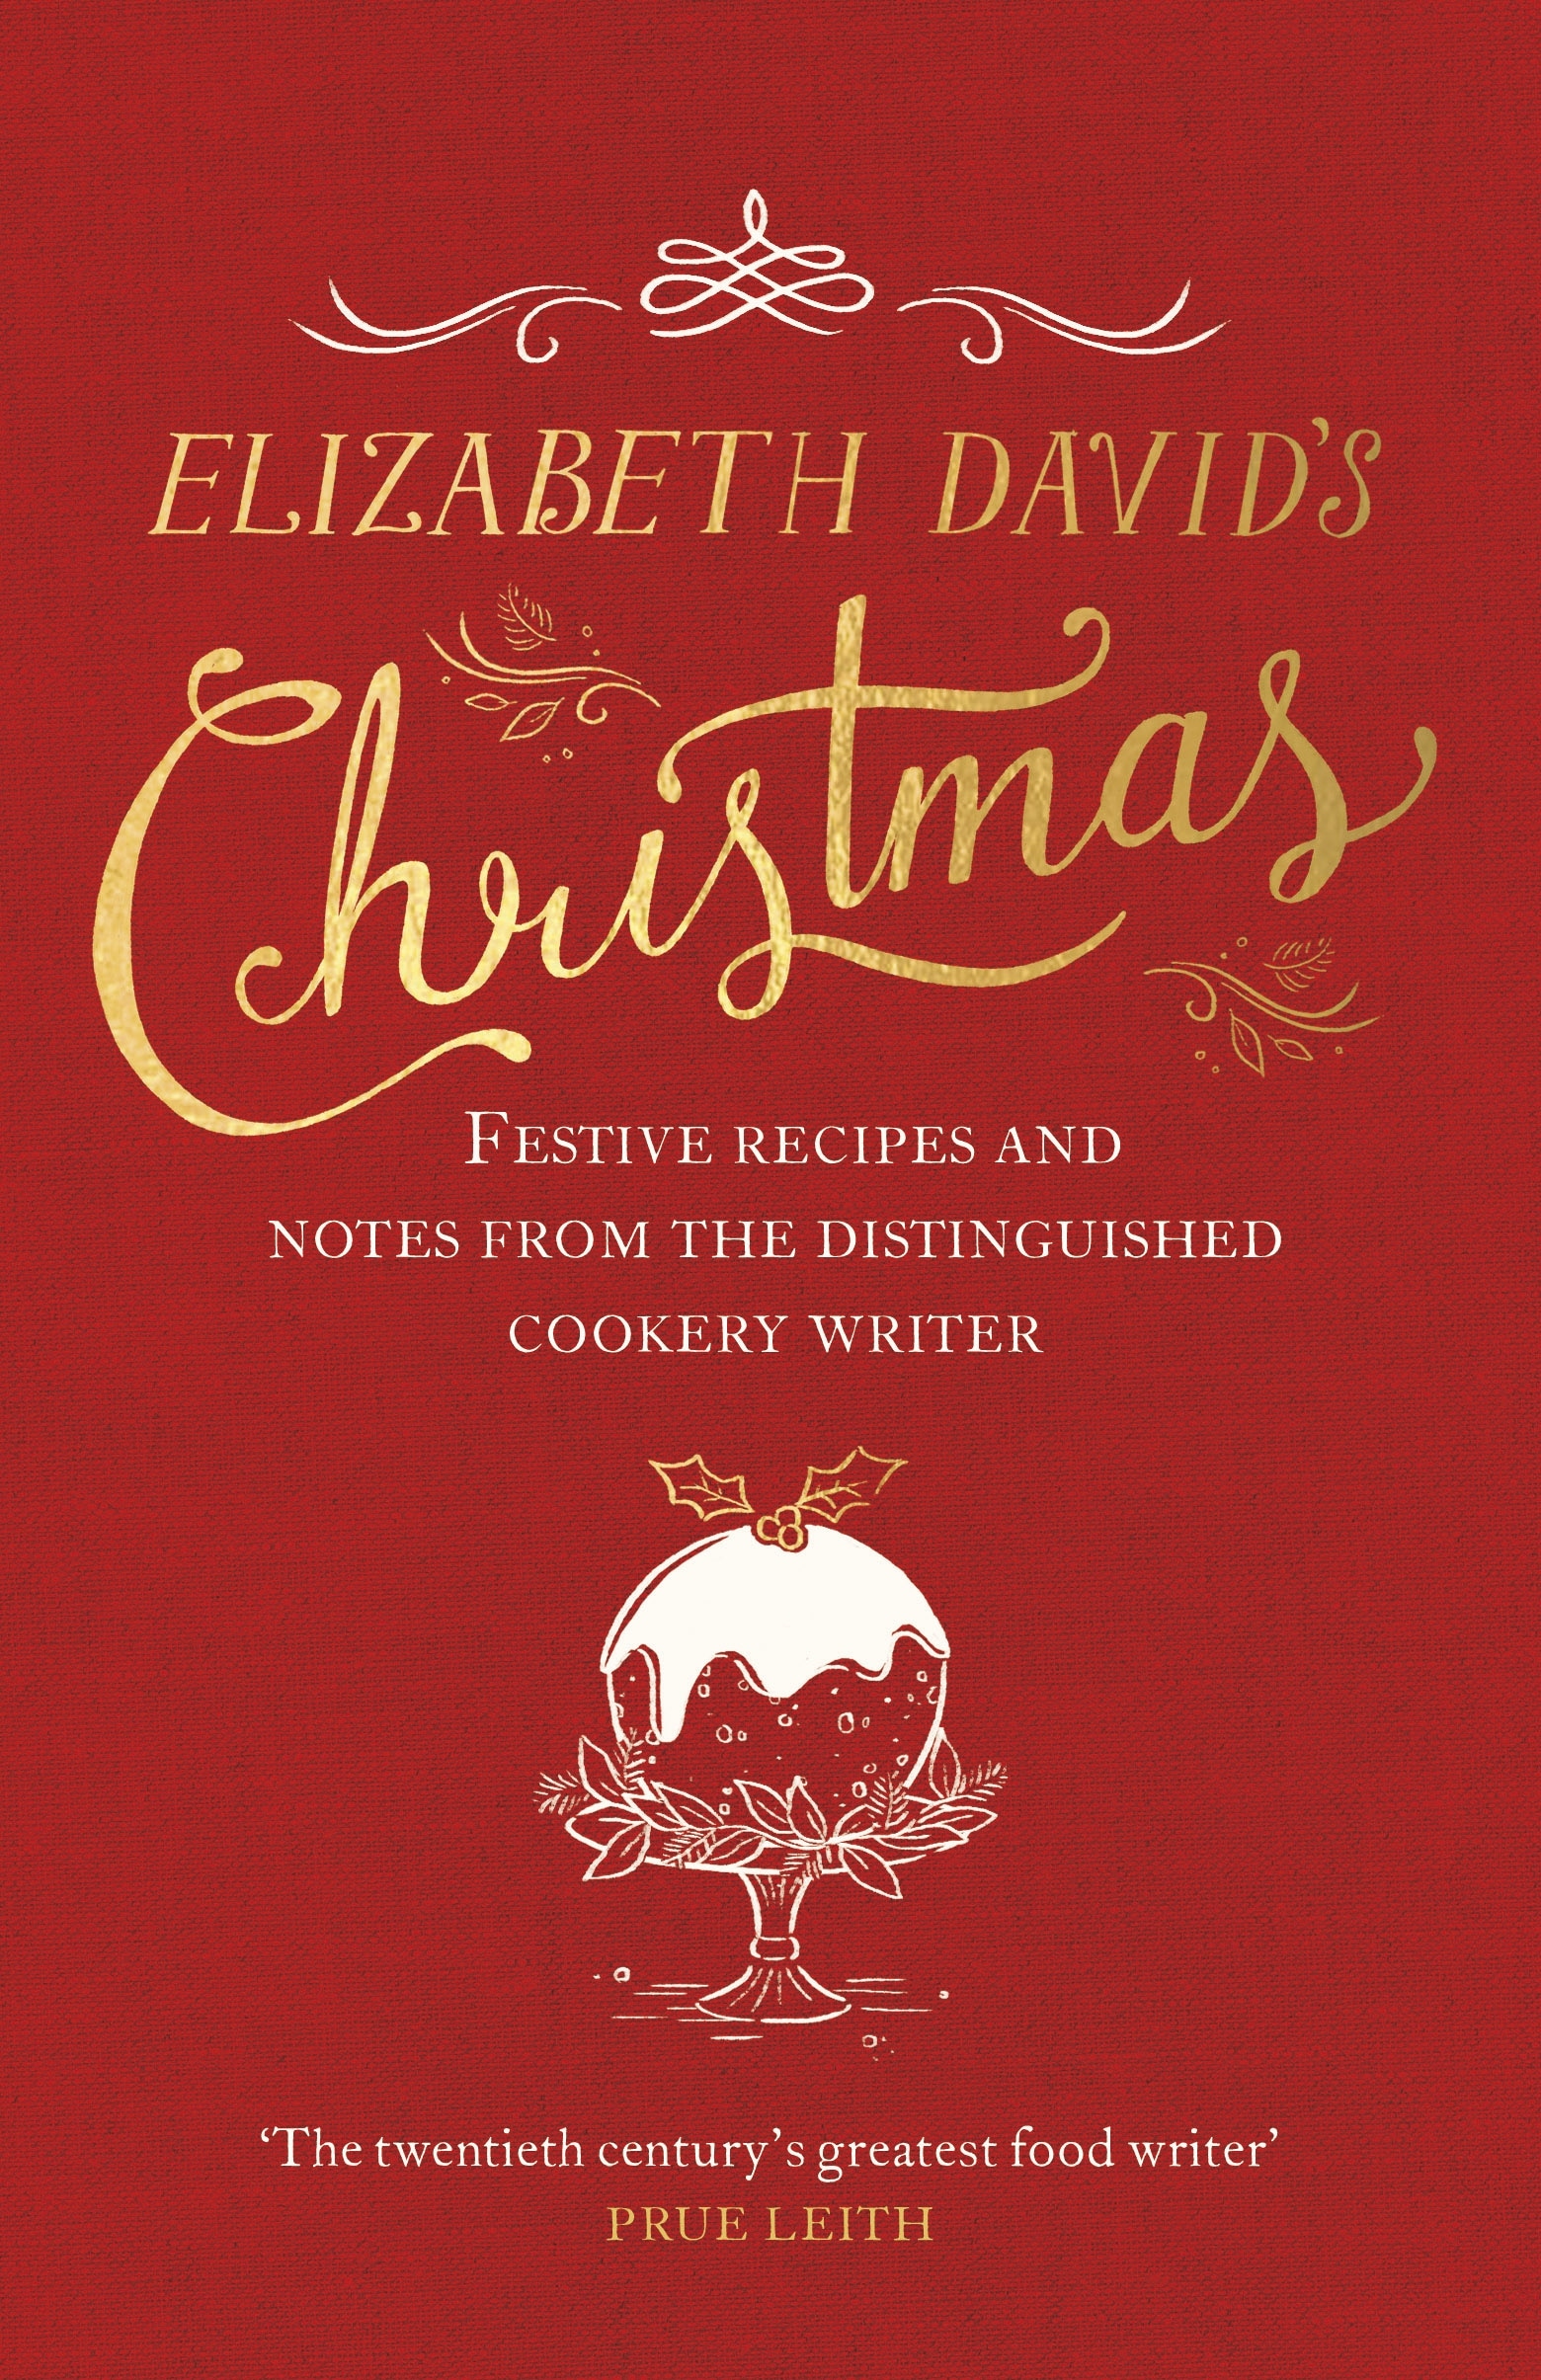 Book “Elizabeth David's Christmas” by Elizabeth David, Jill Norman — November 1, 2018